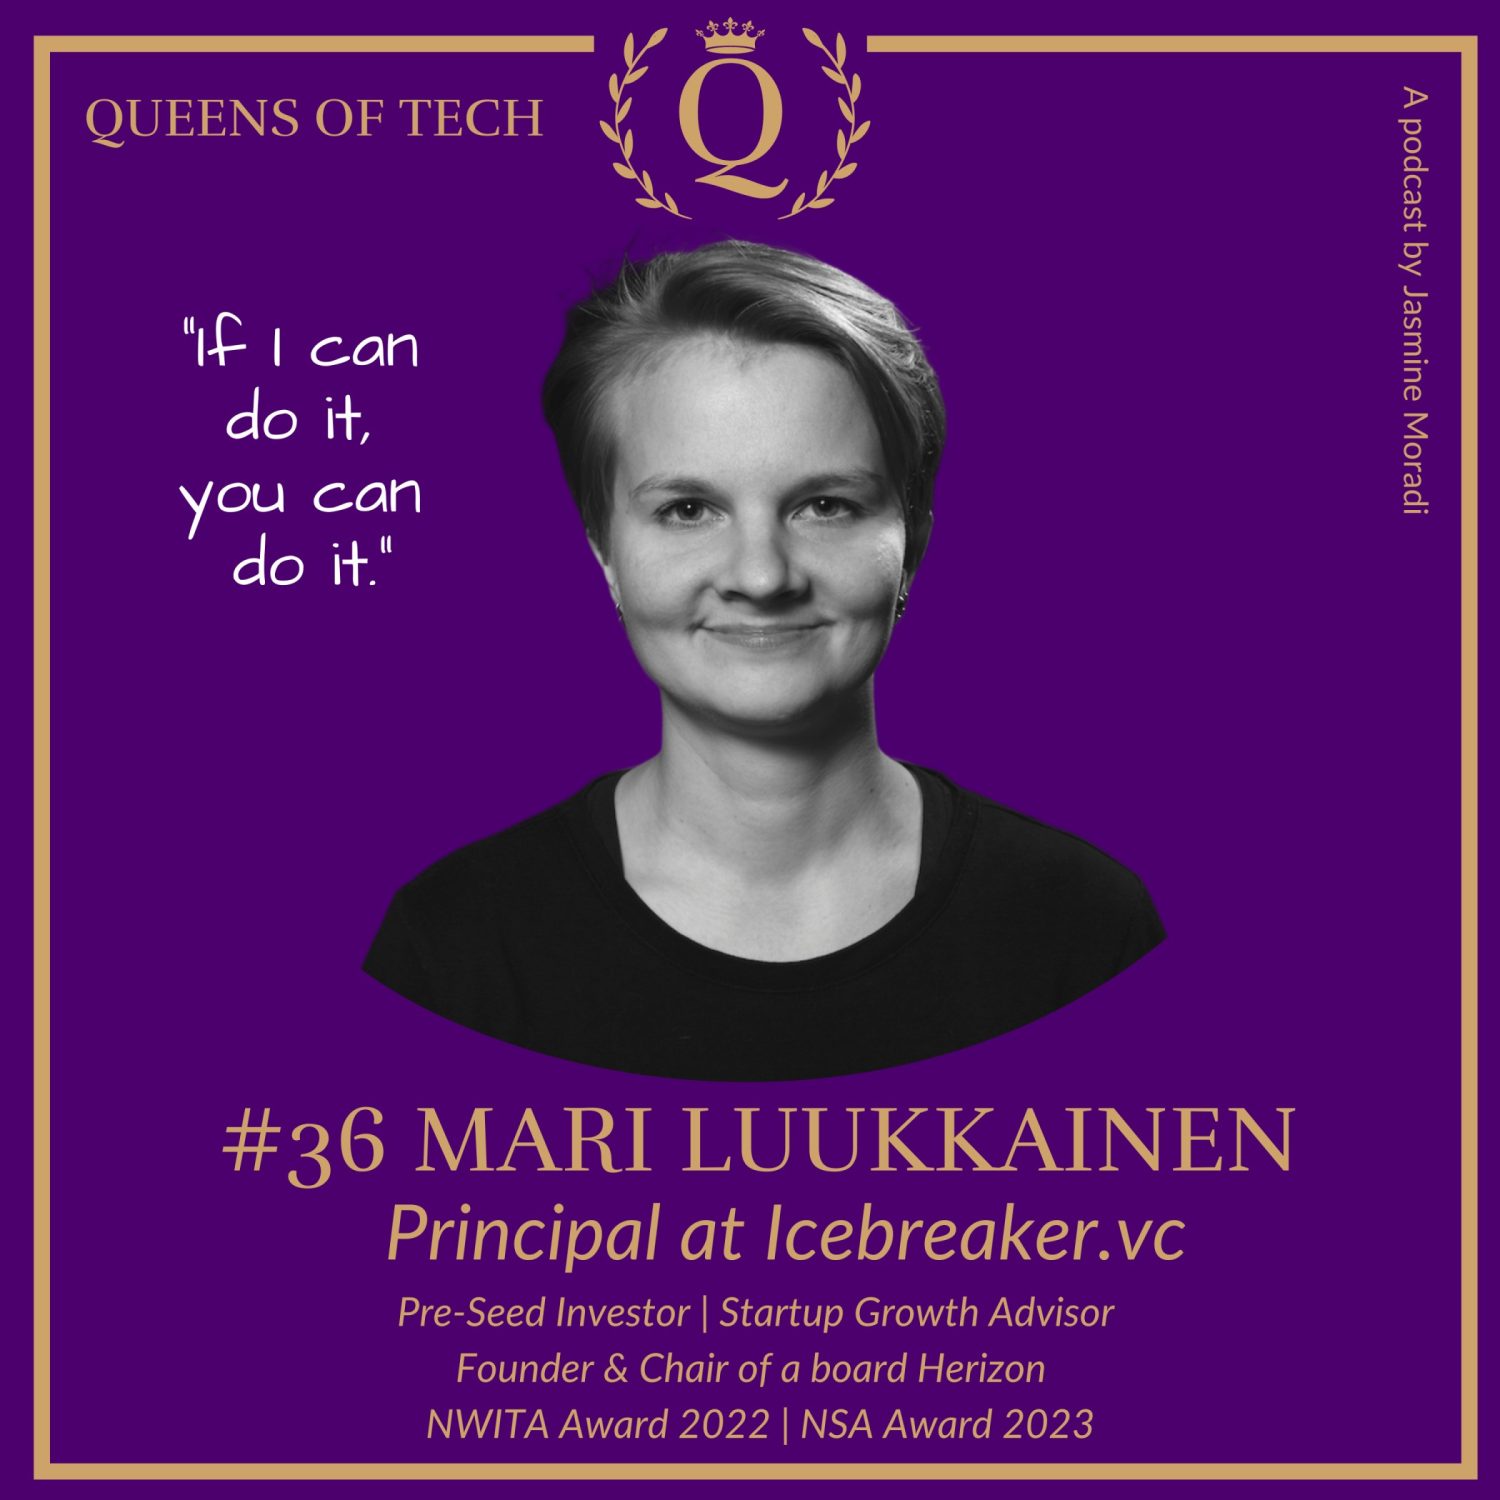 Mari Luukkainen-Icebreaker.vc-Queens of Tech